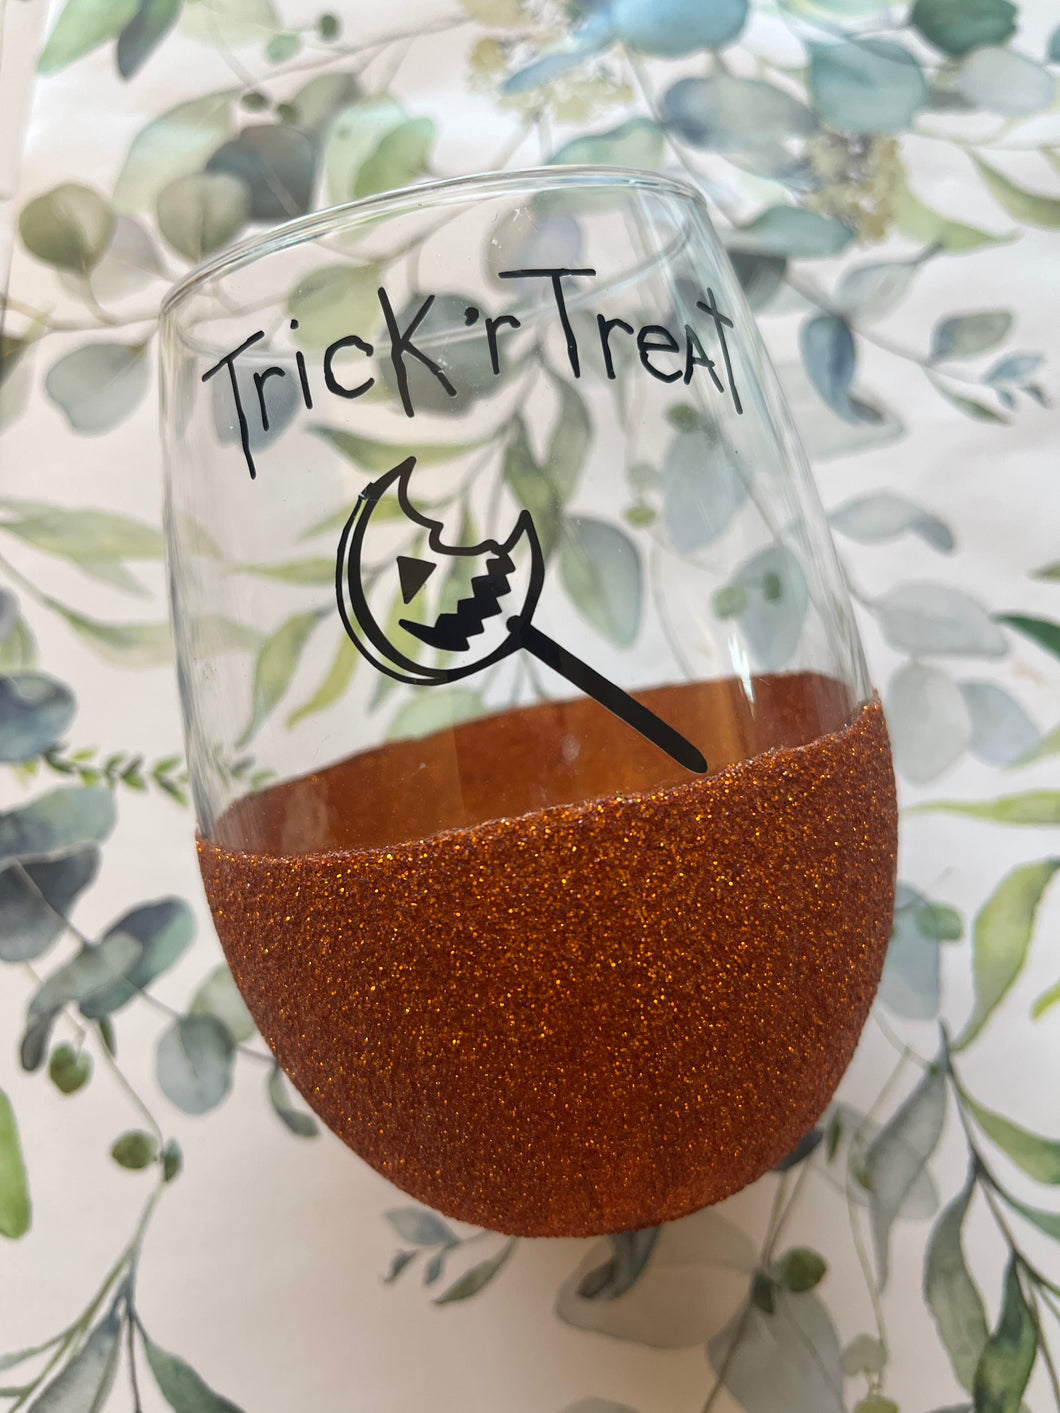 Trick r’ treat glitter wine glass